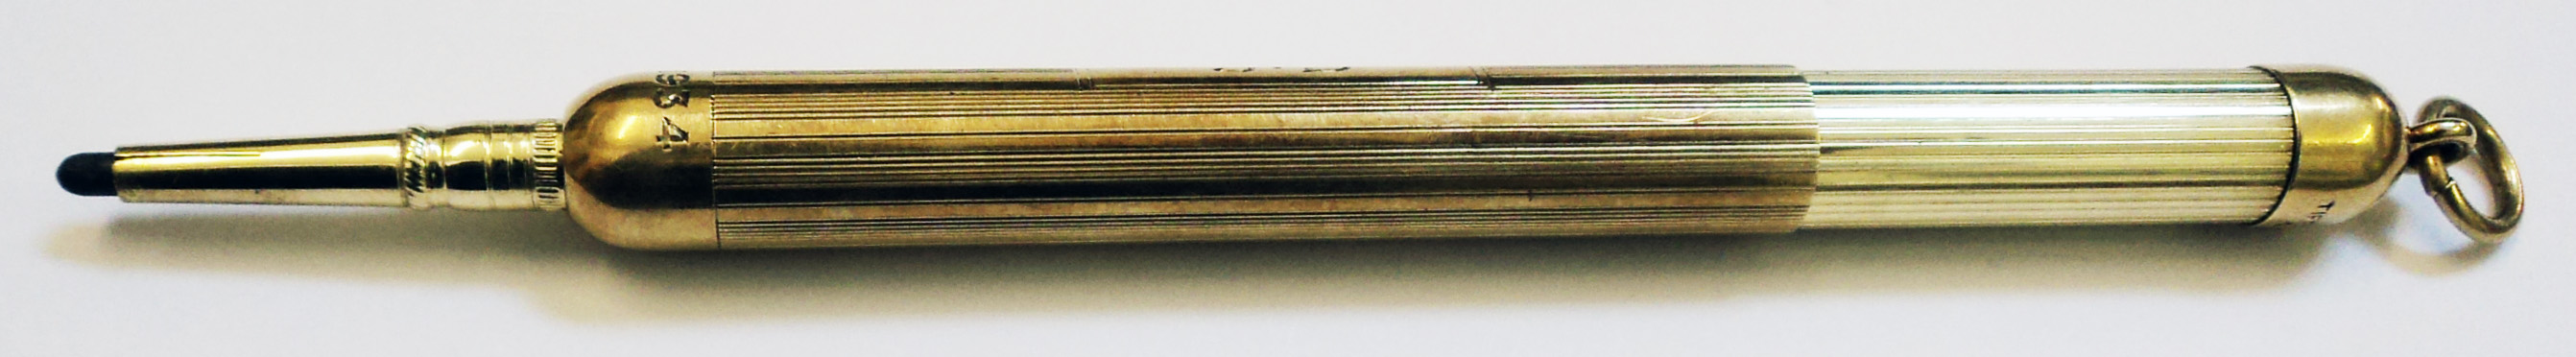 A 14k. gold Tiffany & Co. propelling pencil - N. Y. 1934